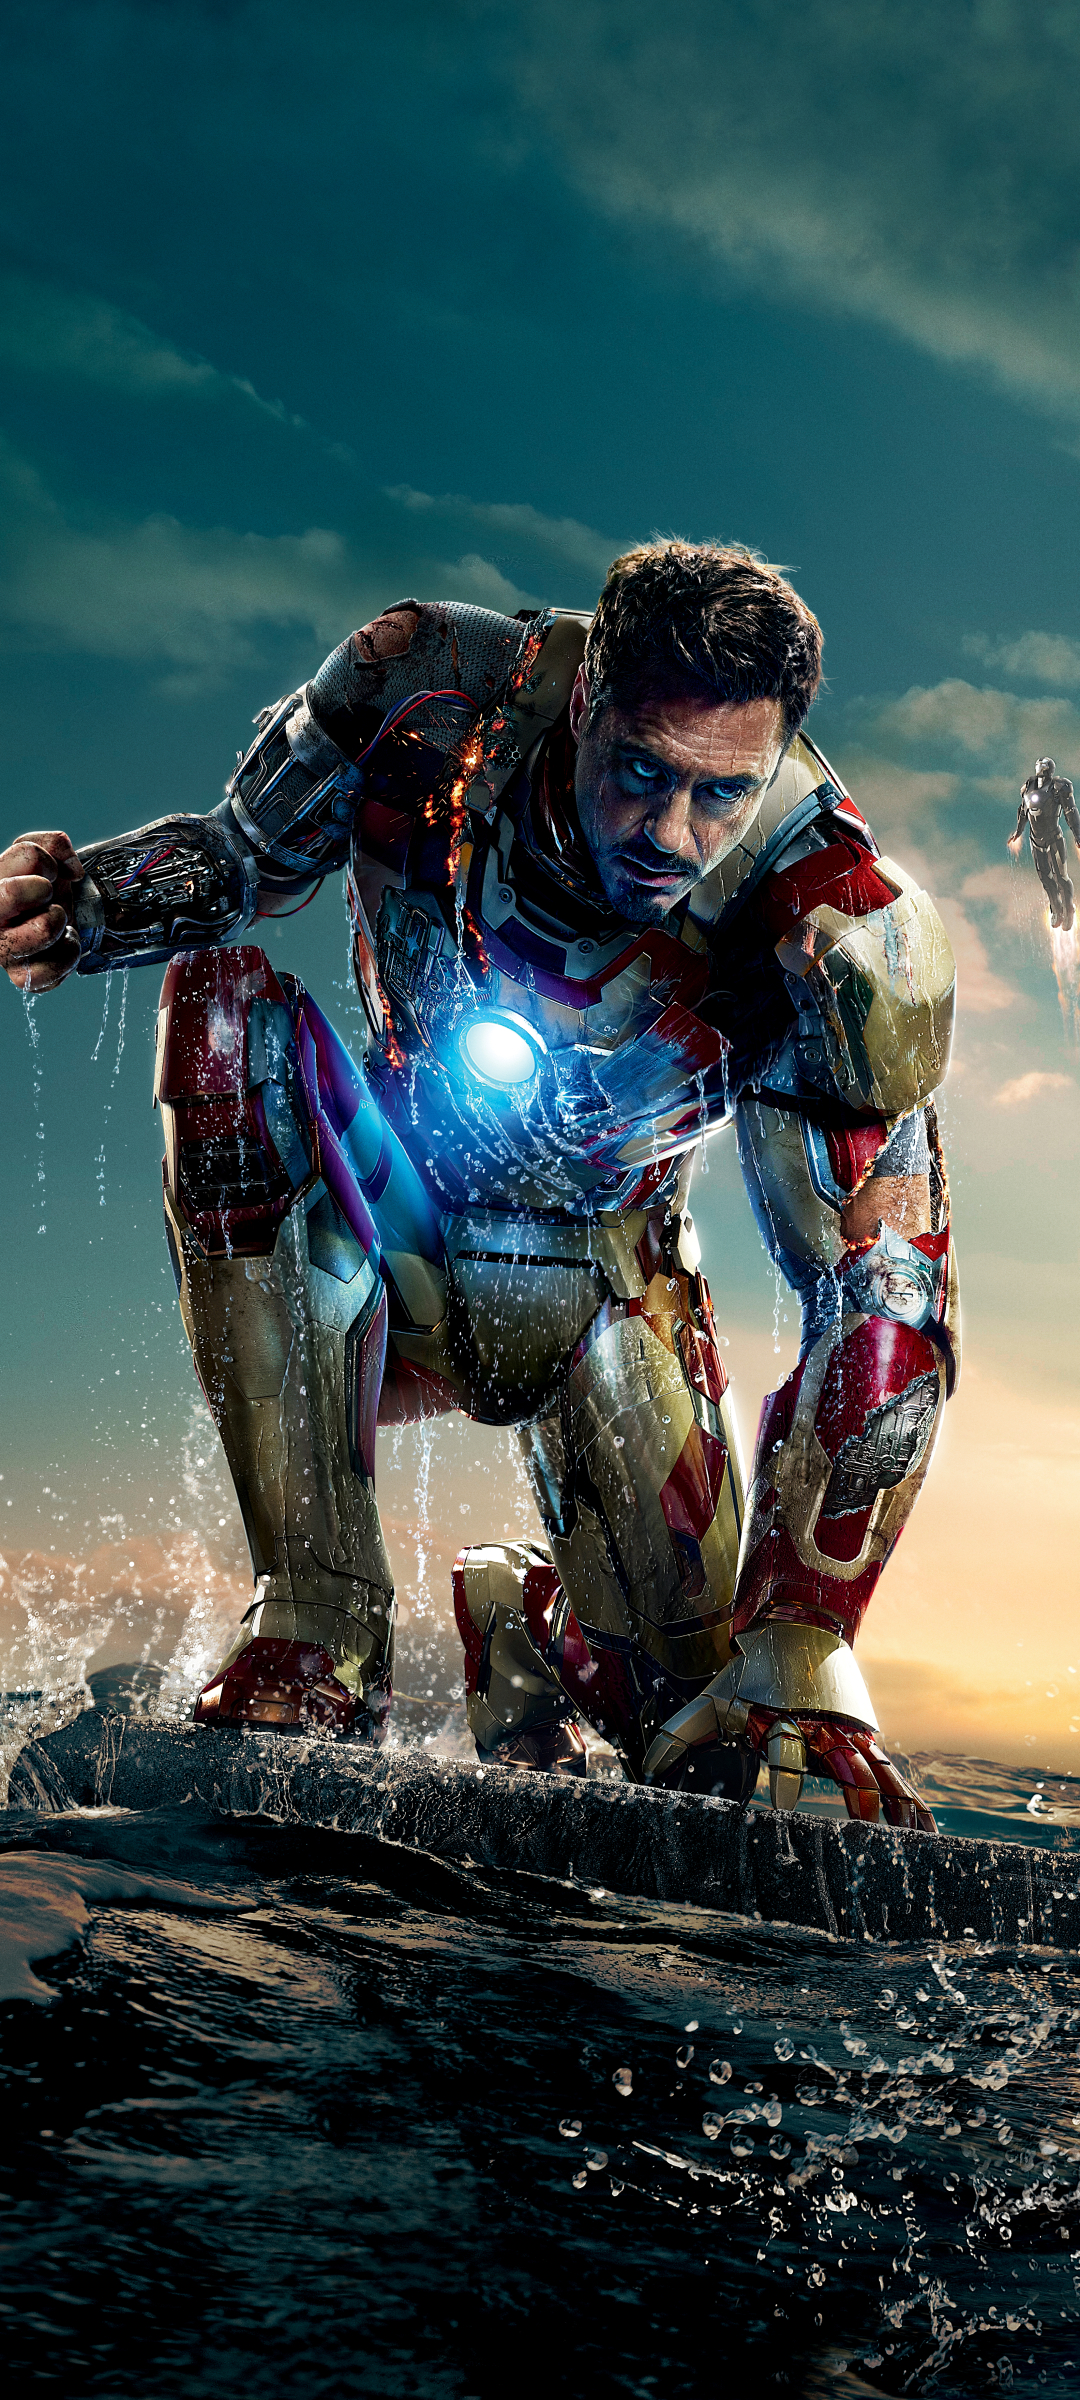 Descarga gratuita de fondo de pantalla para móvil de Iron Man, Los Vengadores, Robert Downey Jr, Películas, Hombre De Acero, Tony Stark, Iron Man 3, Vengadores.